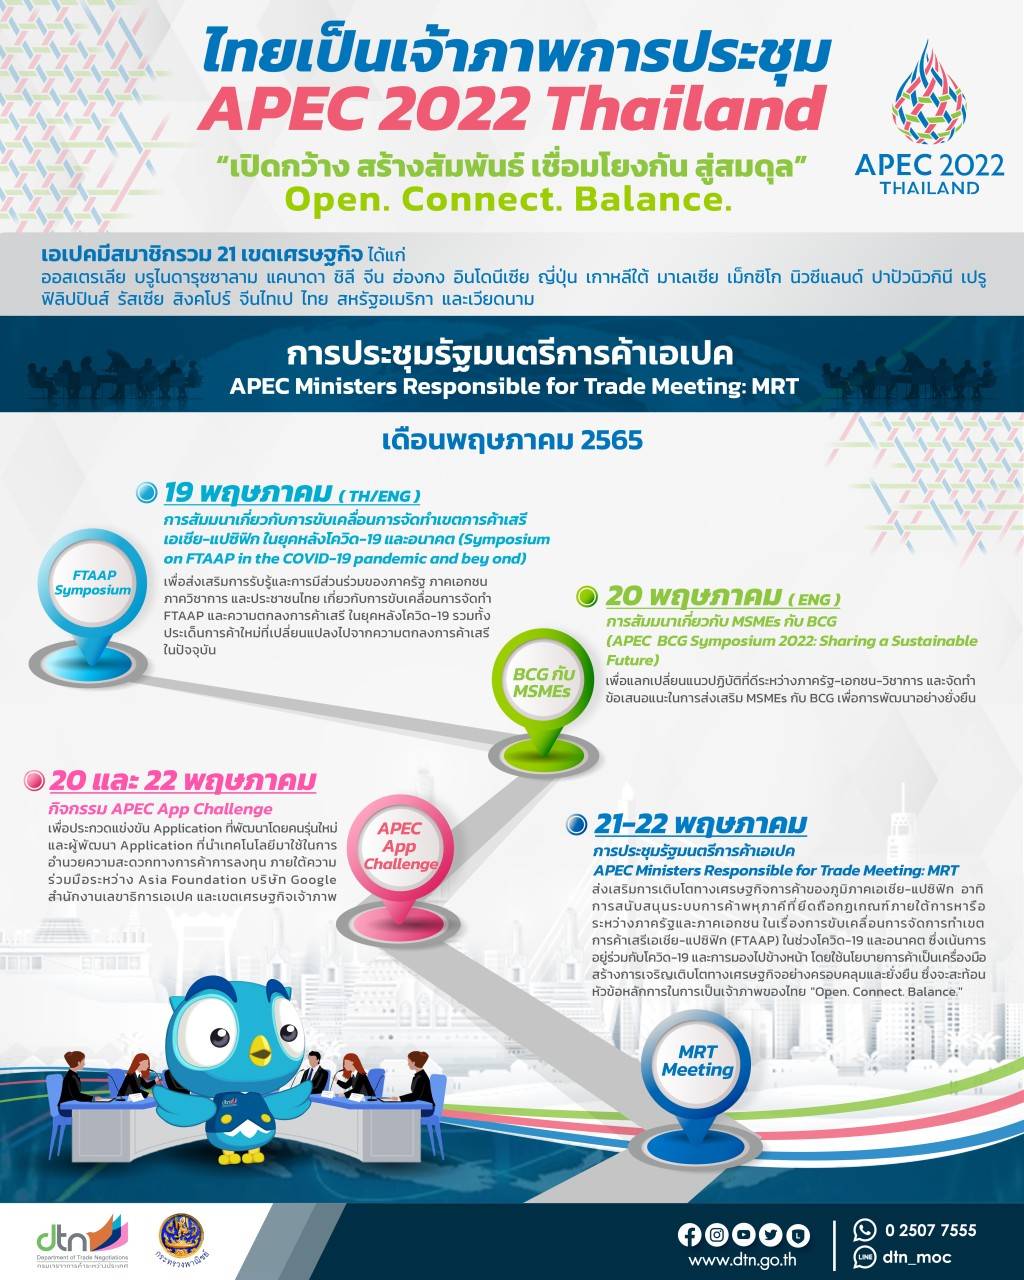 ในฐานะที่ไทยเป็นเจ้าภาพการประชุม APEC 2022  มาอัพเดทกันเถอะ มีการประชุมด้านเศรษฐกิจ​อะไรบ้าง ในเดือนพฤษภาคมนี้?​ 💰💰💰